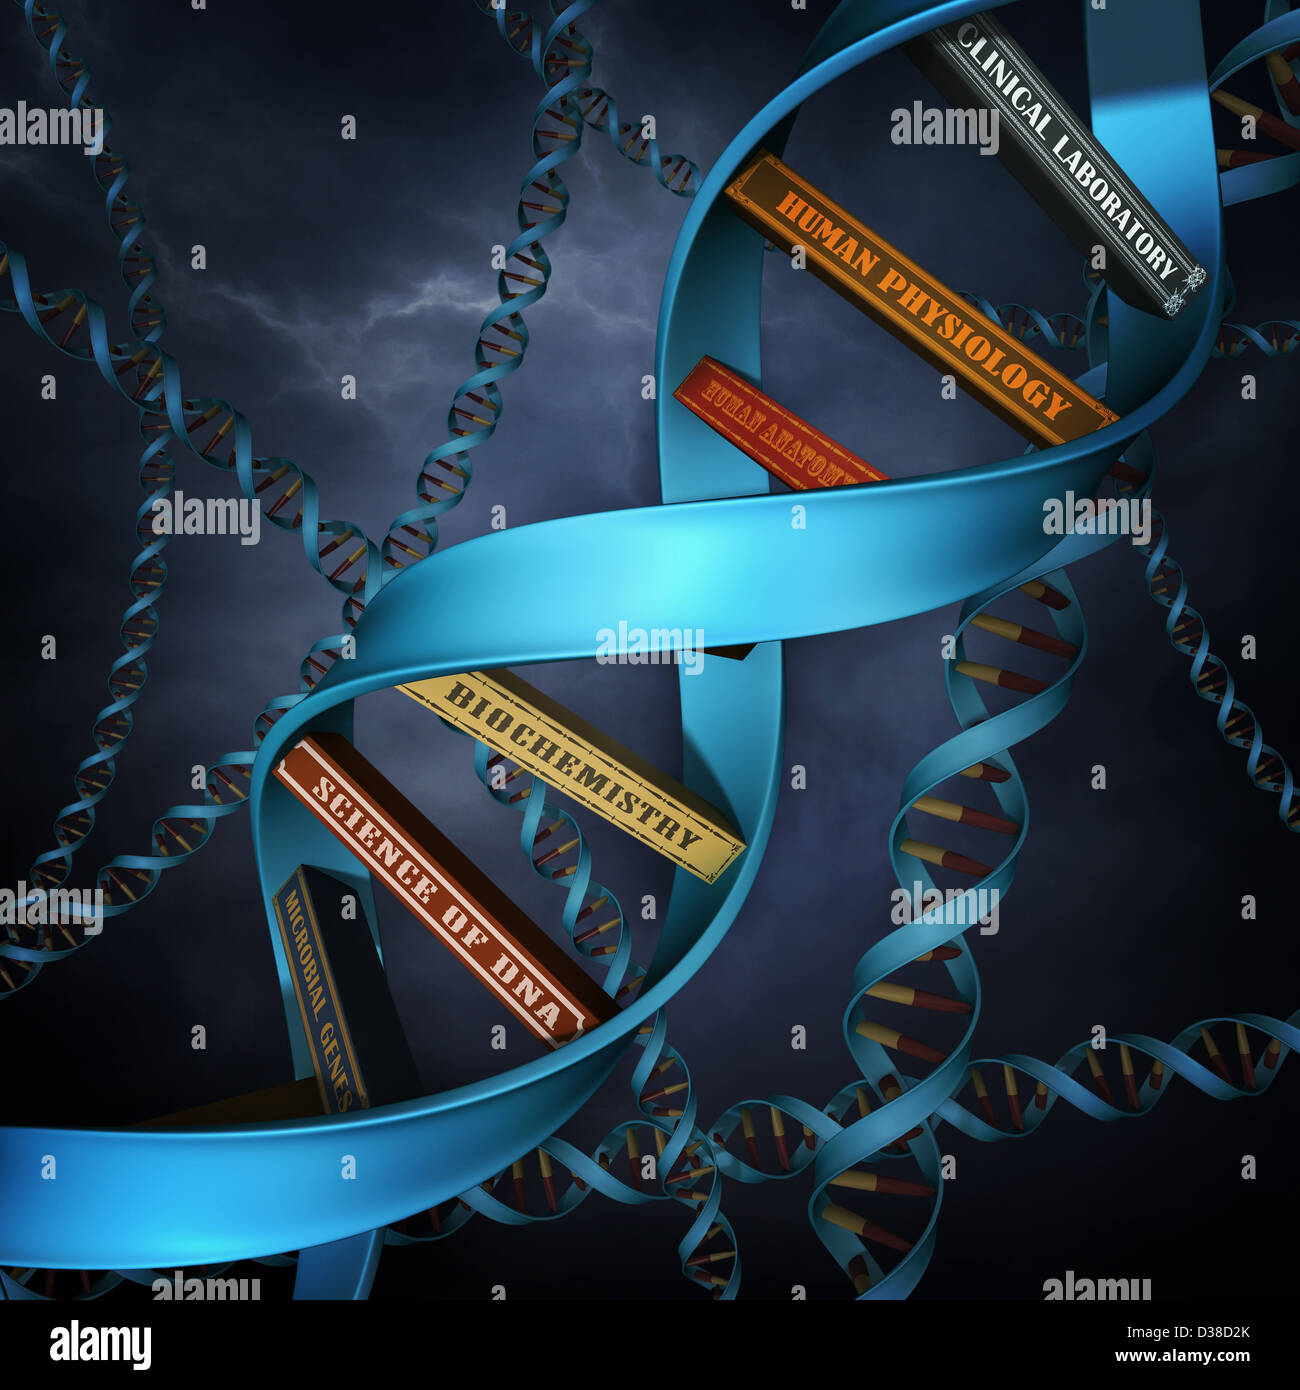 Image d'illustration de l'ADN réplique avec books Banque D'Images